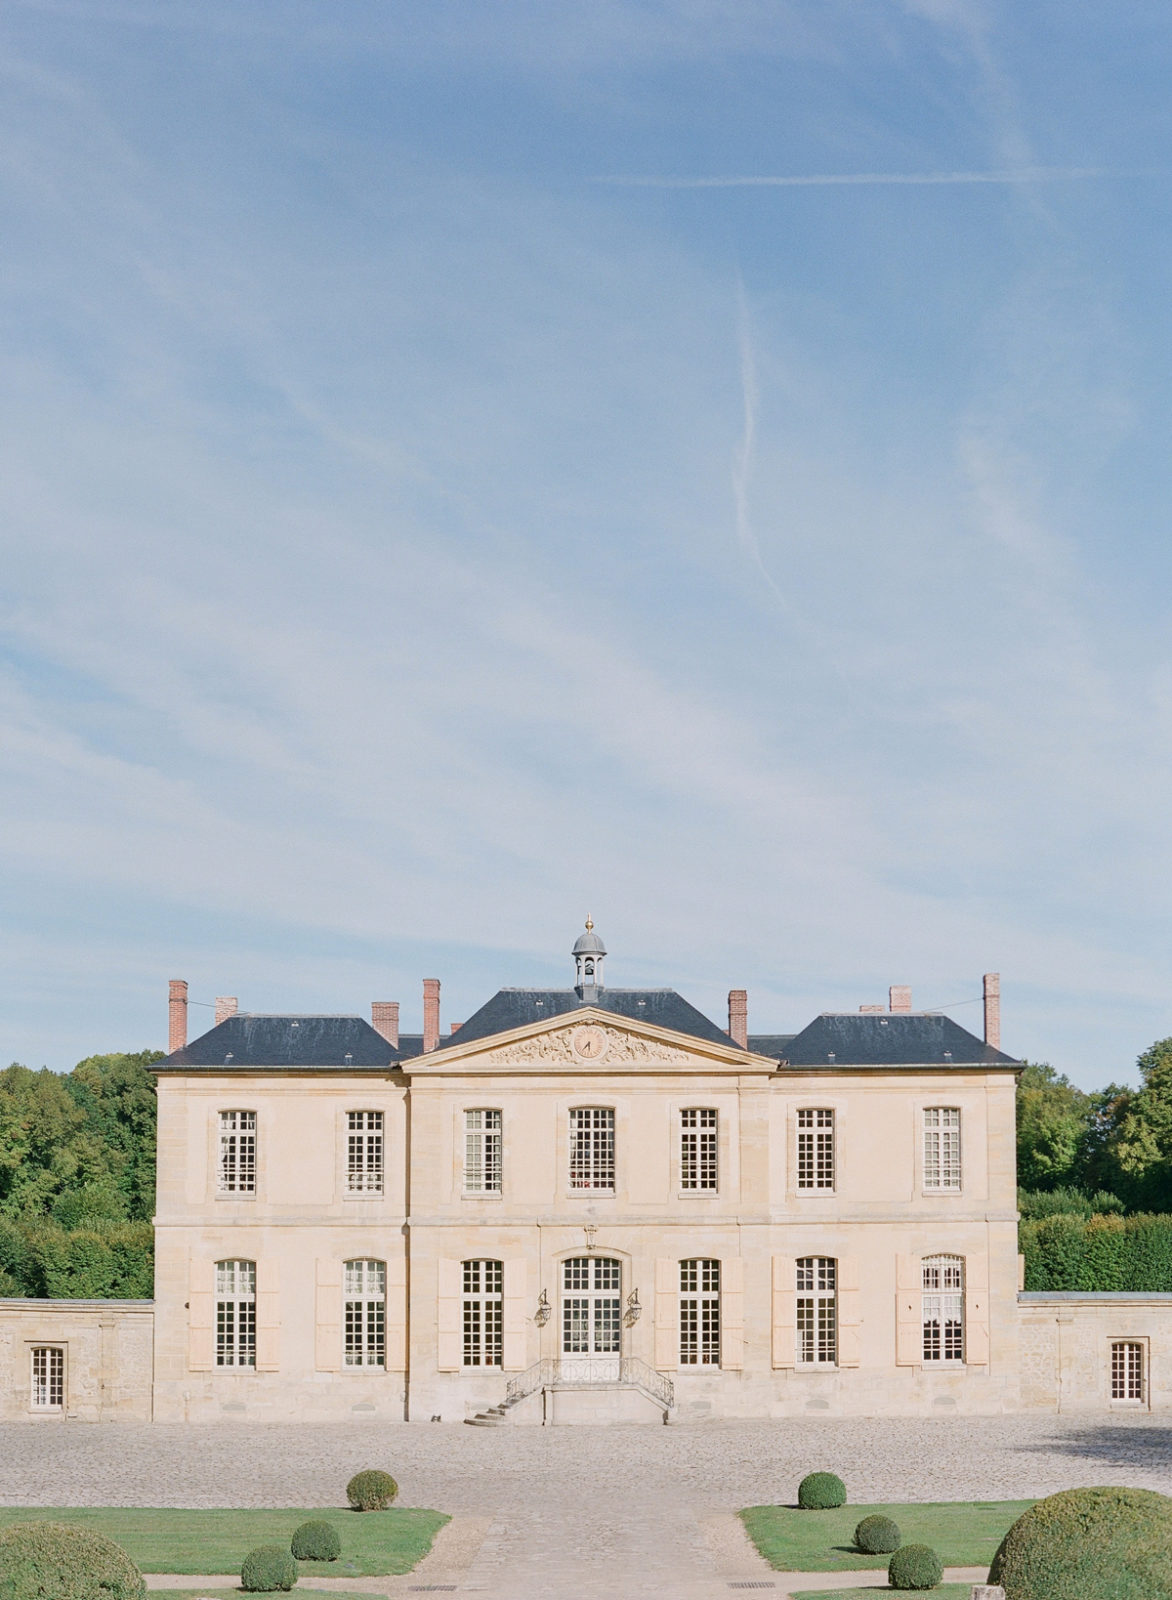 Best Destination Wedding Venues | Molly Carr Photography | Luxury Destination Wedding | Paris Film Photographer | France Wedding Photography | Chateau de Villette | Paris, France